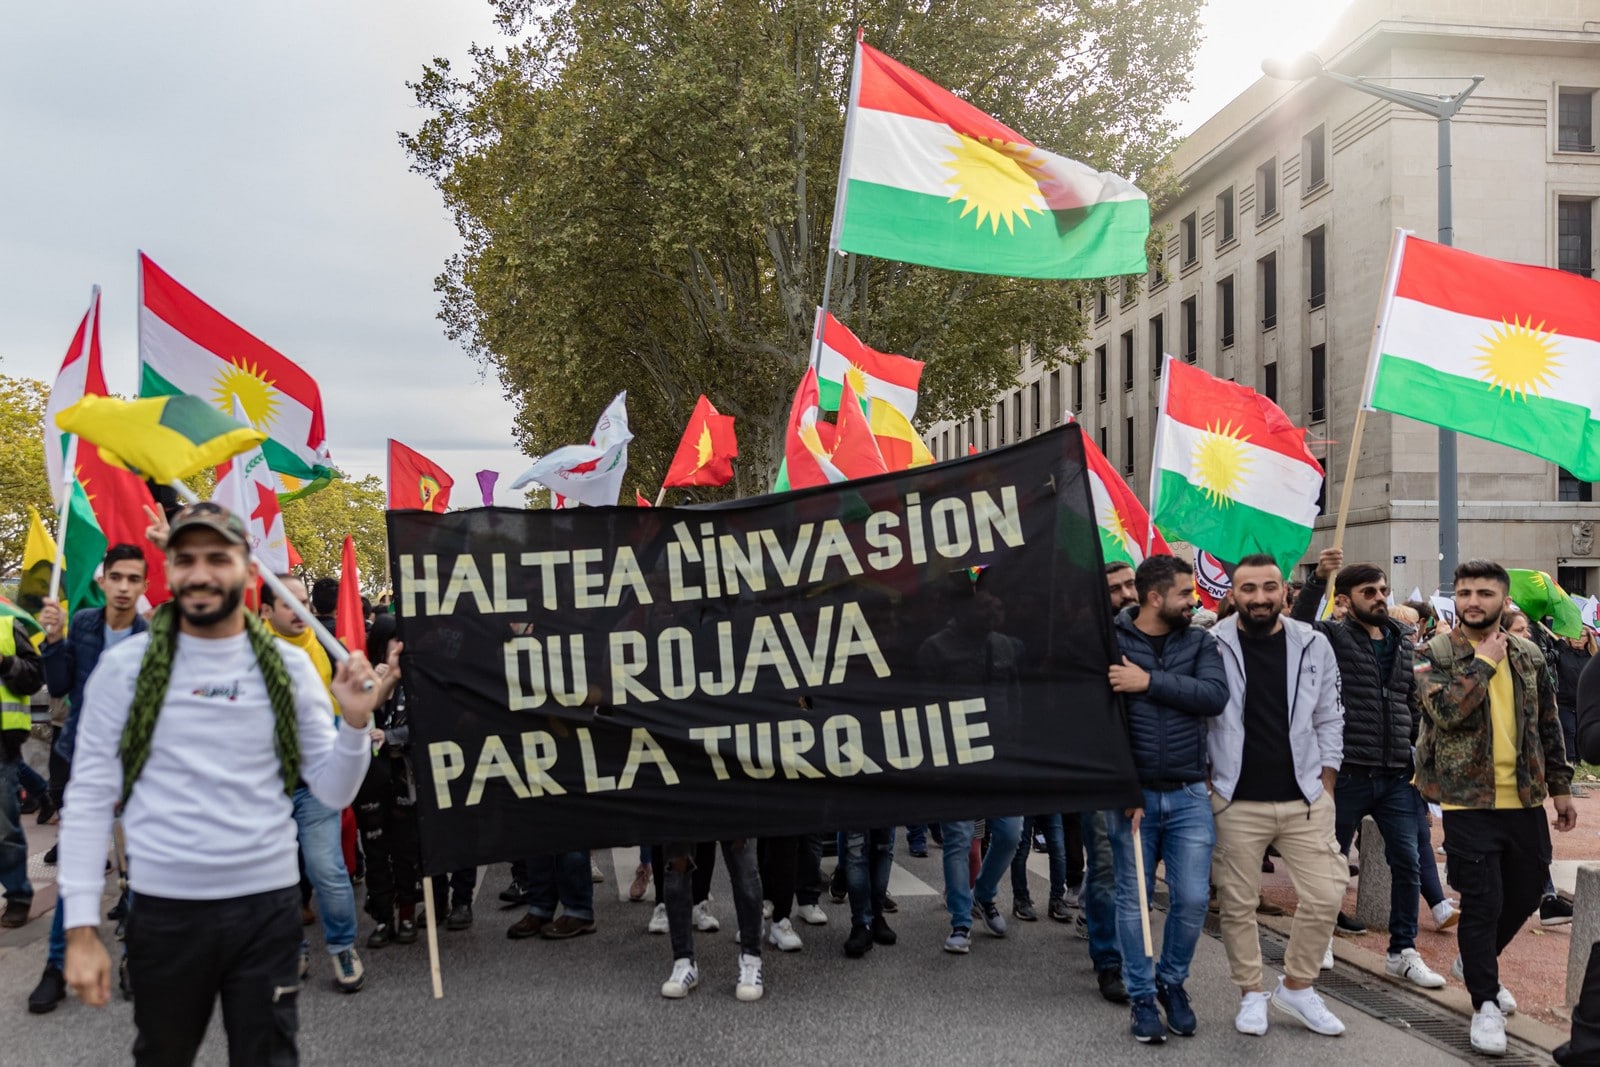 A Lyon, en octobre 2019, une manifestation pour protester contre l'invasion du Rojava par la Turquie,
Auteurs  : KONRAD K./SIPA,
Numéro de reportage  : 00927672_000017.